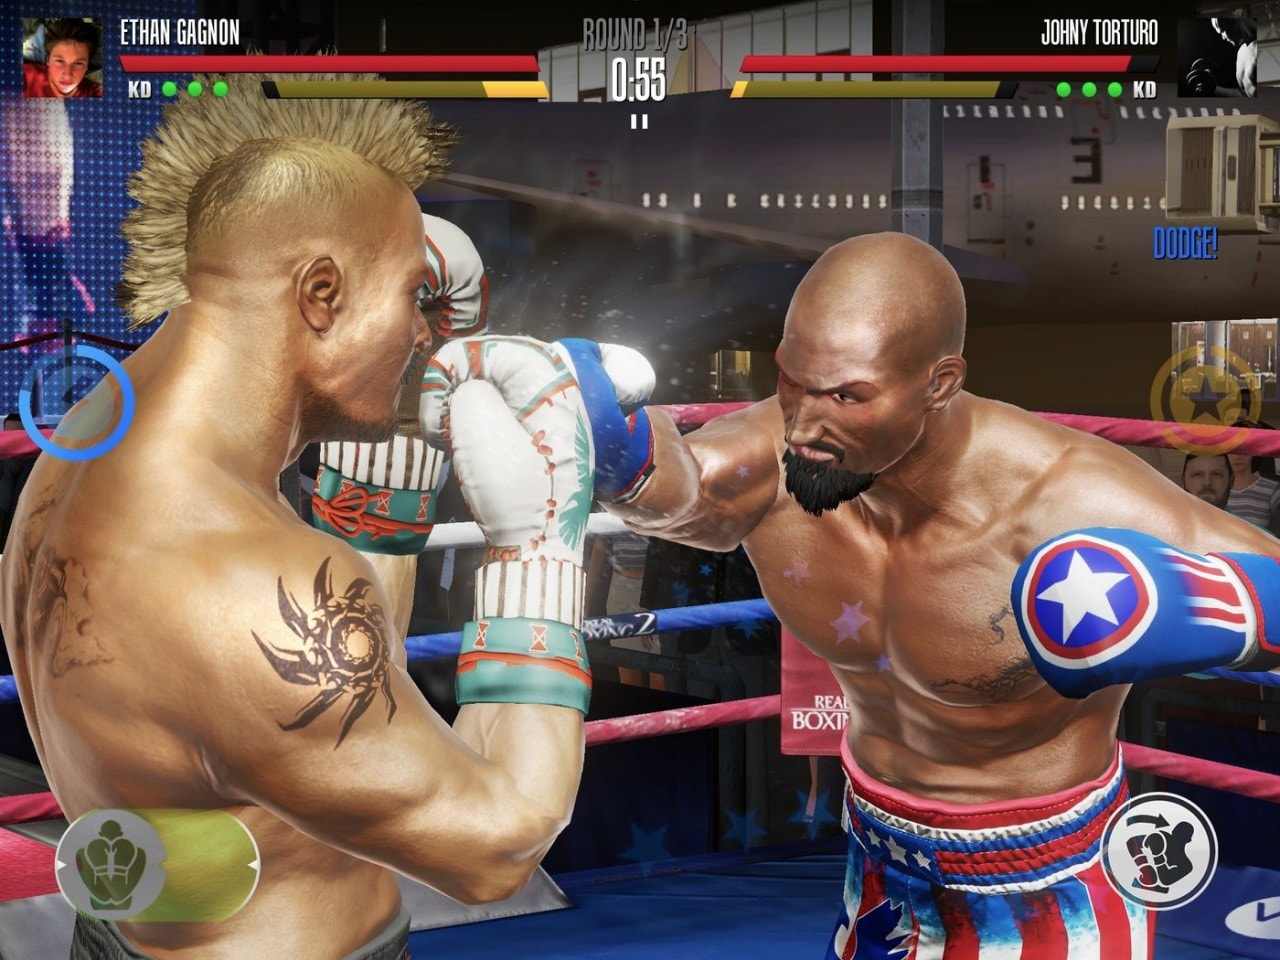 Real Boxing 2 è in gran forma in queste immagini